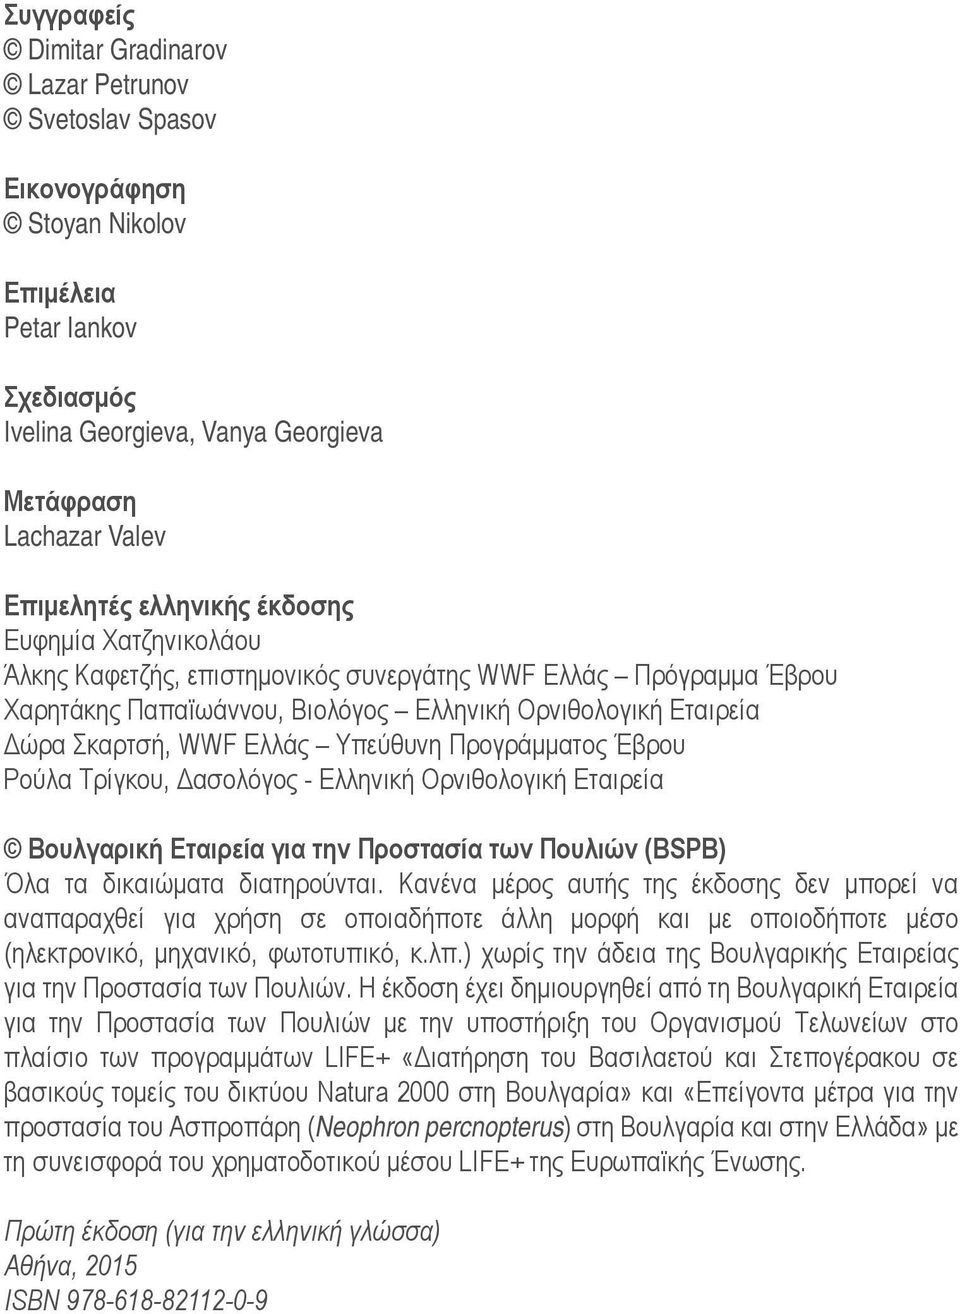 Υπεύθυνη Προγράμματος Έβρου Ρούλα Τρίγκου, Δασολόγος - Ελληνική Ορνιθολογική Εταιρεία Βουλγαρική Εταιρεία για την Προστασία των Πουλιών (BSPB) Όλα τα δικαιώματα διατηρούνται.